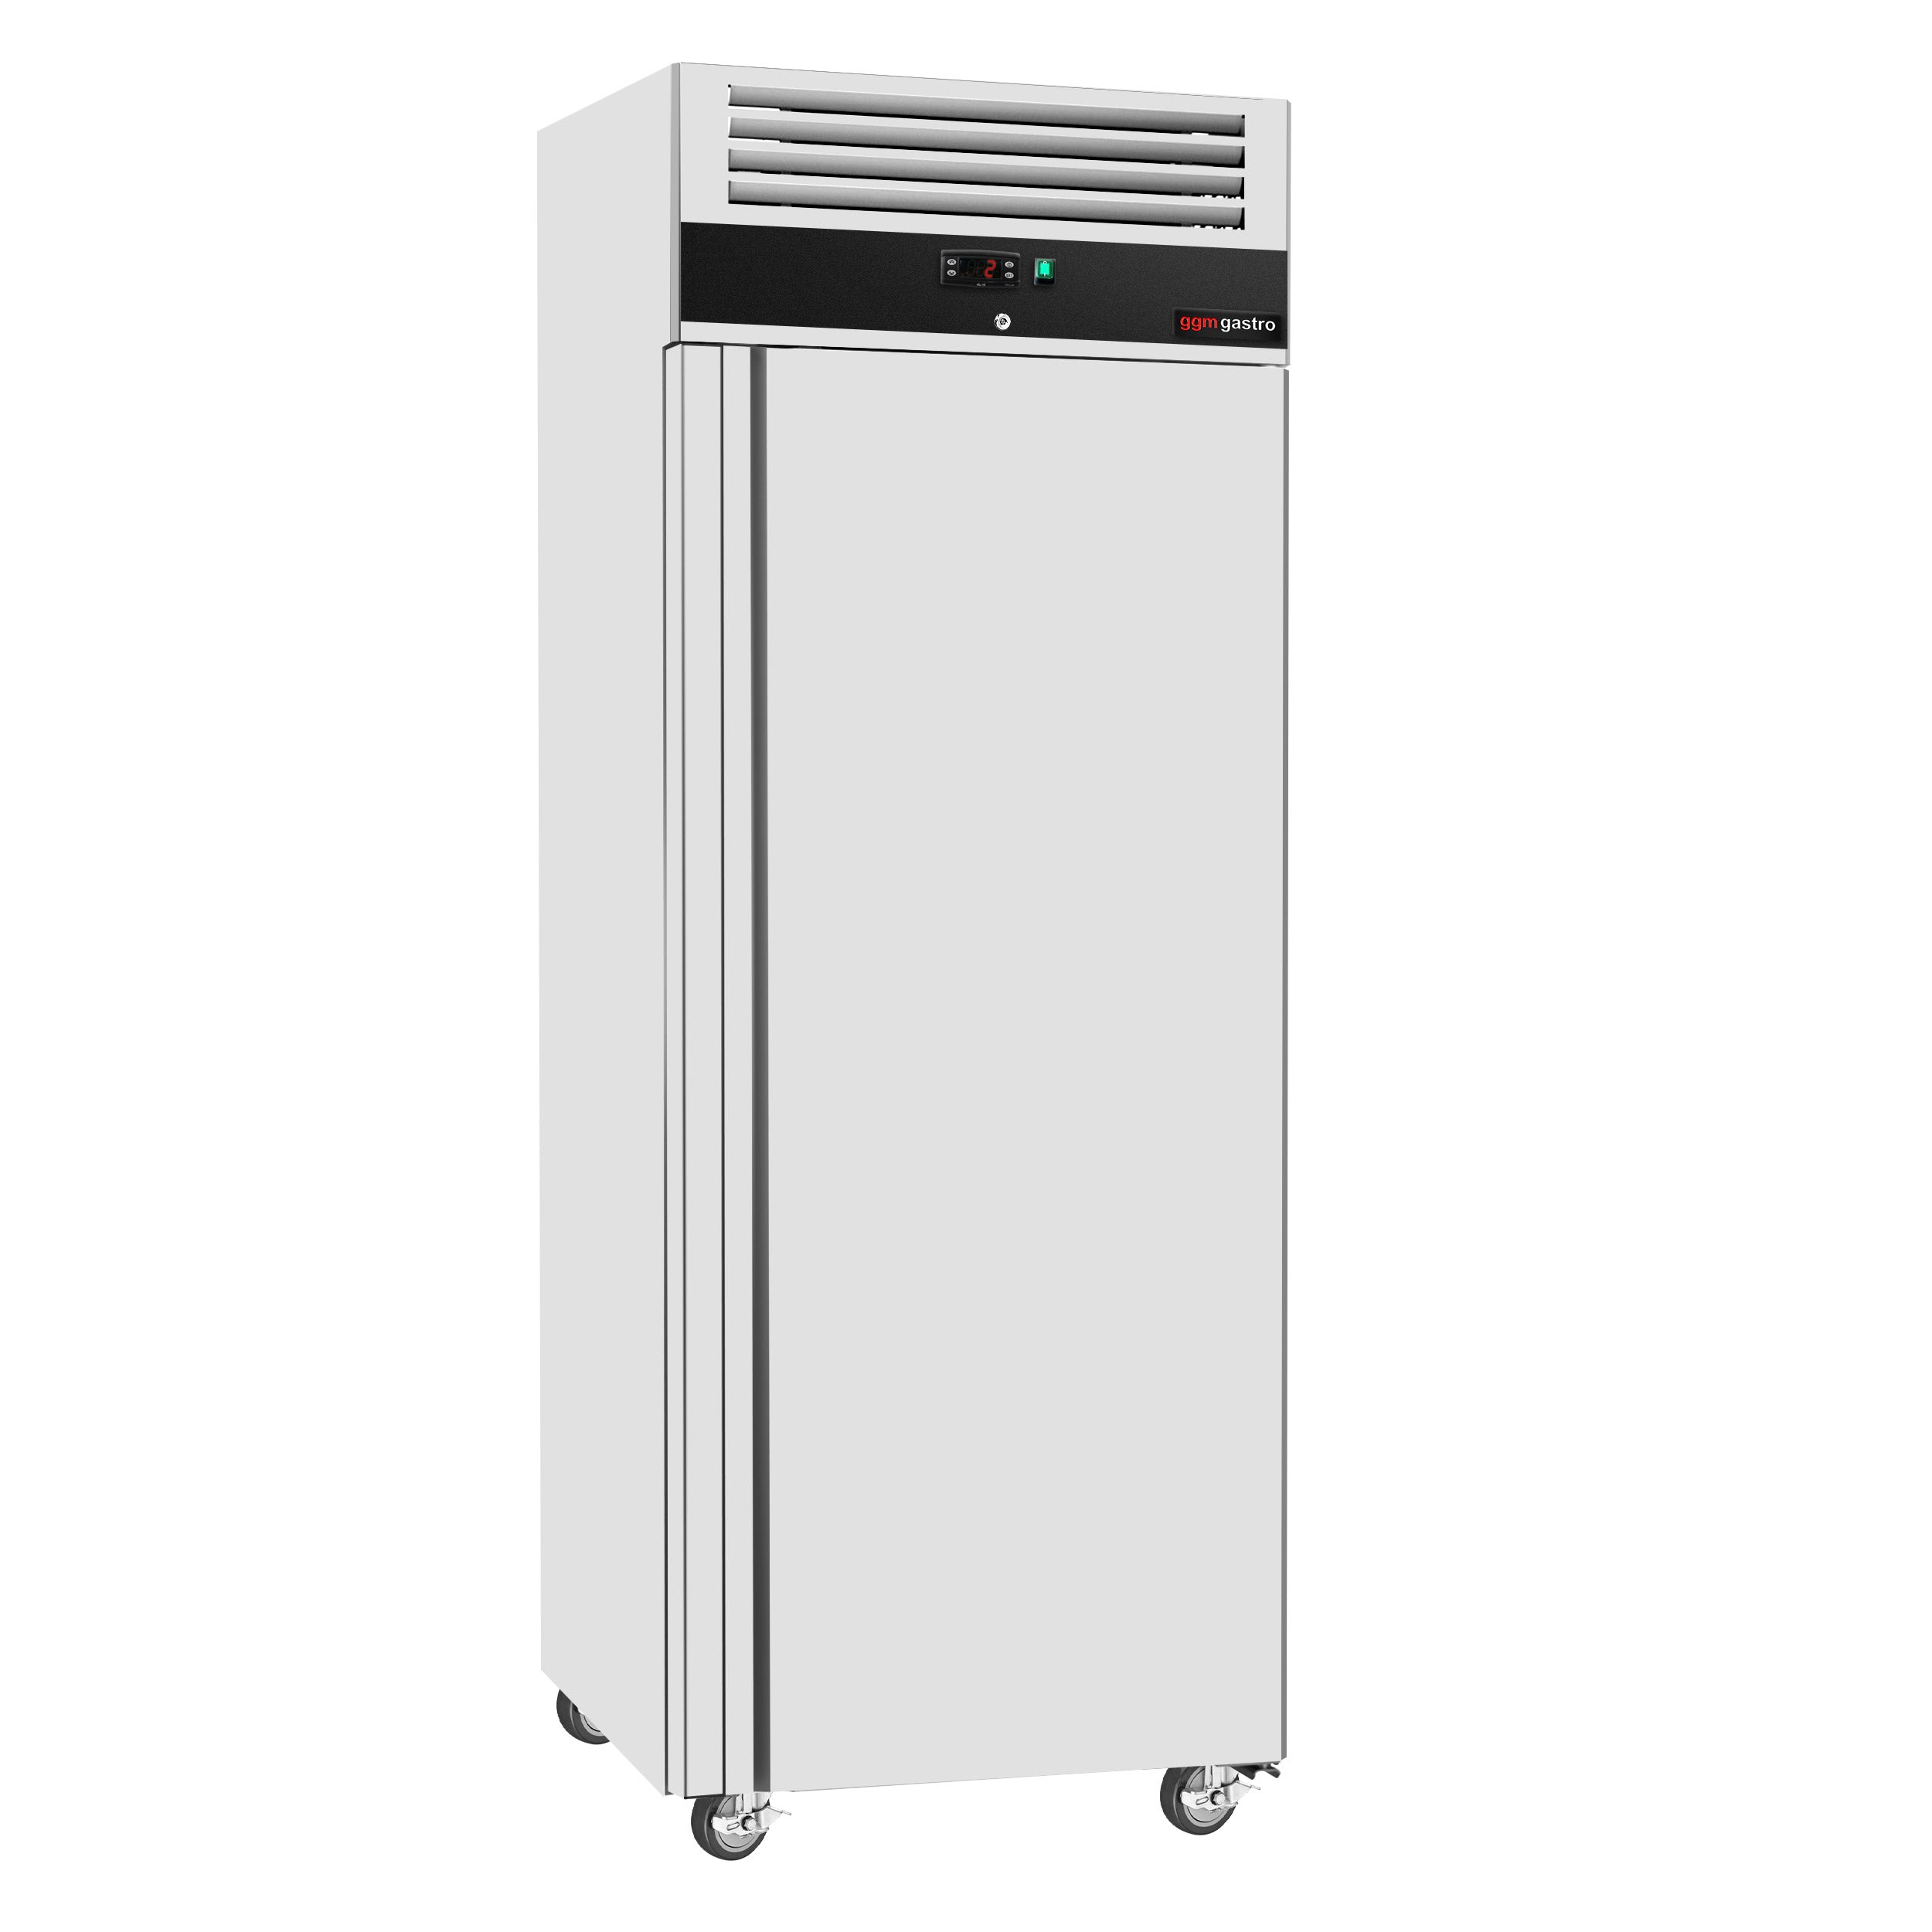 Refrigerator PREMIUM - 0.74 x 0.83 m - 700 liters - with 1 door